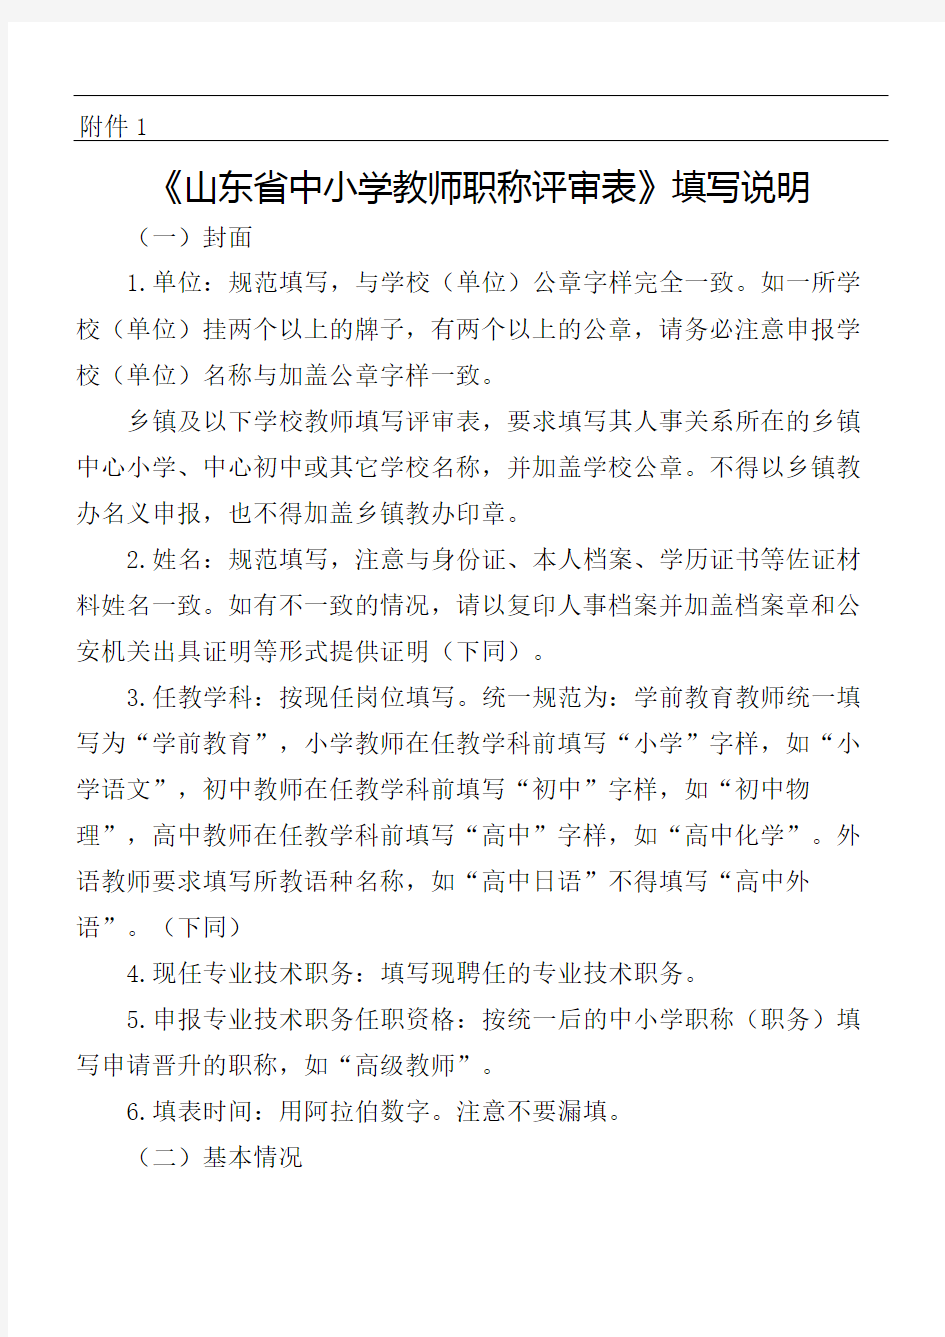 山东省中小学教师职称评审表填写说明